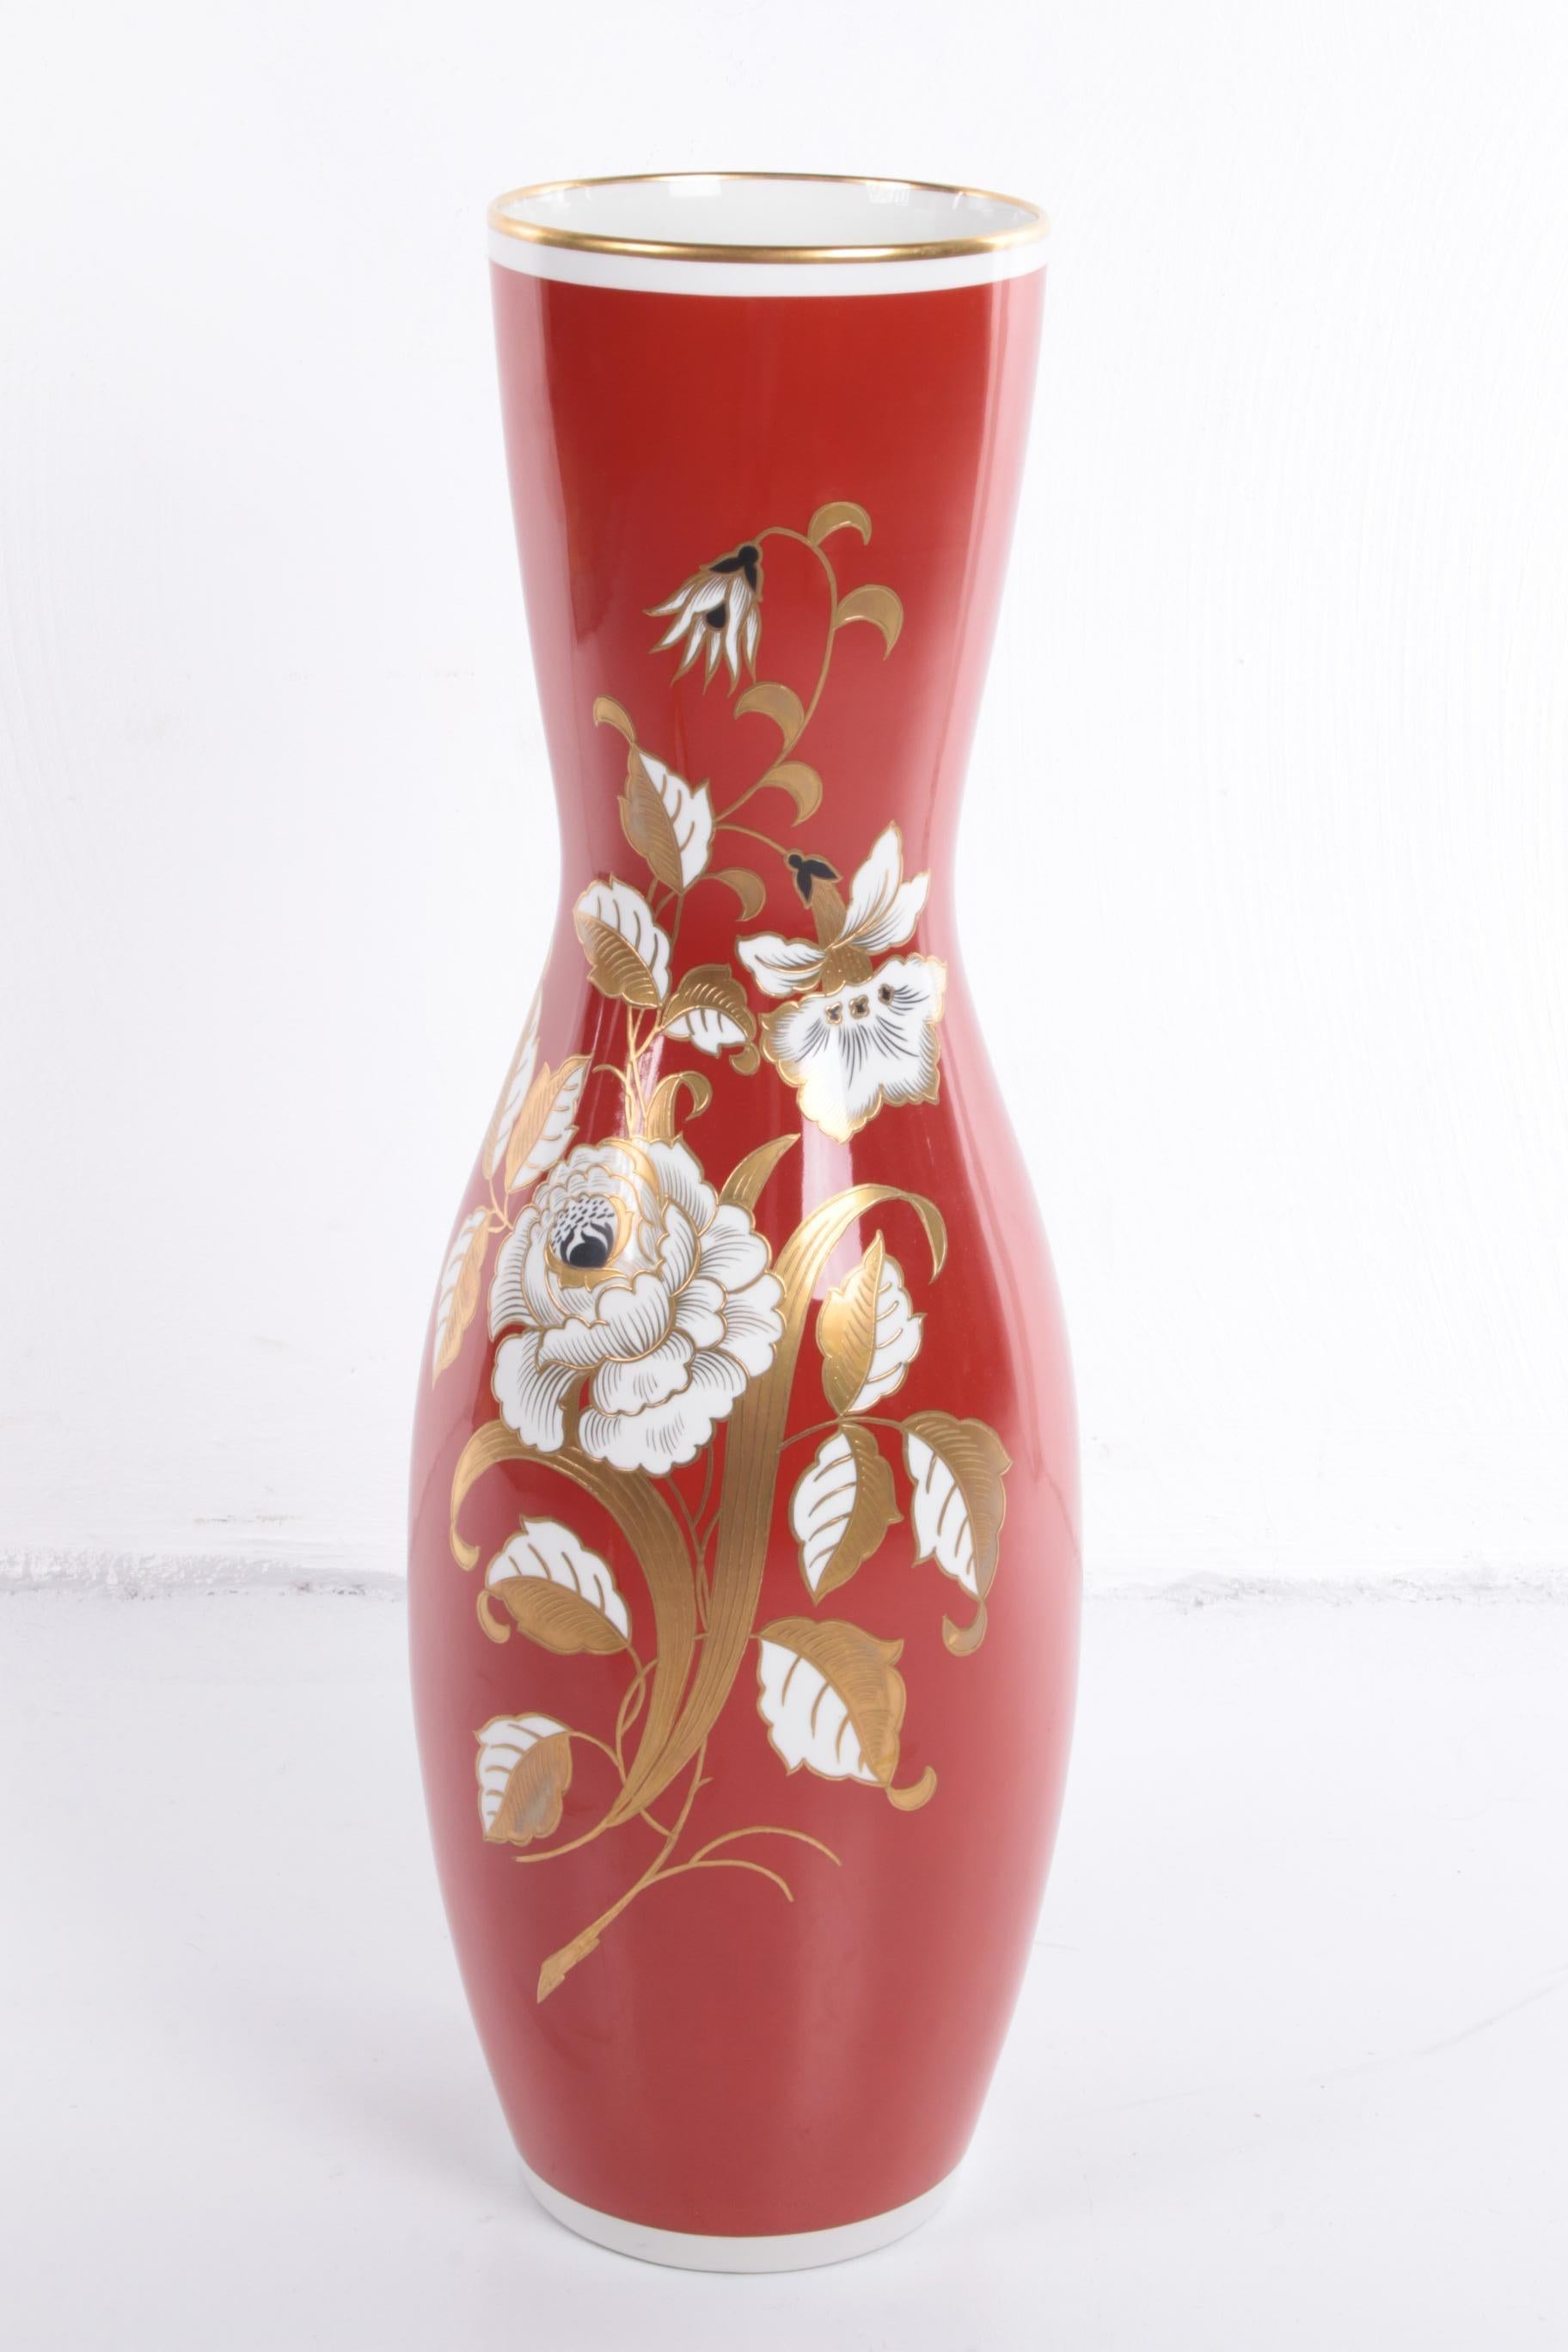 Große rote Porzellanvase mit goldenen Blumen VEB Wallendorfer

Eine seltene große schöne handbemalte Vase,

Von der deutschen Porzellanfabrik Wallendorf 1966 nach Heden,

Die Vase hat eine schöne rote Farbe mit goldenen Blumen,

Gewicht 10